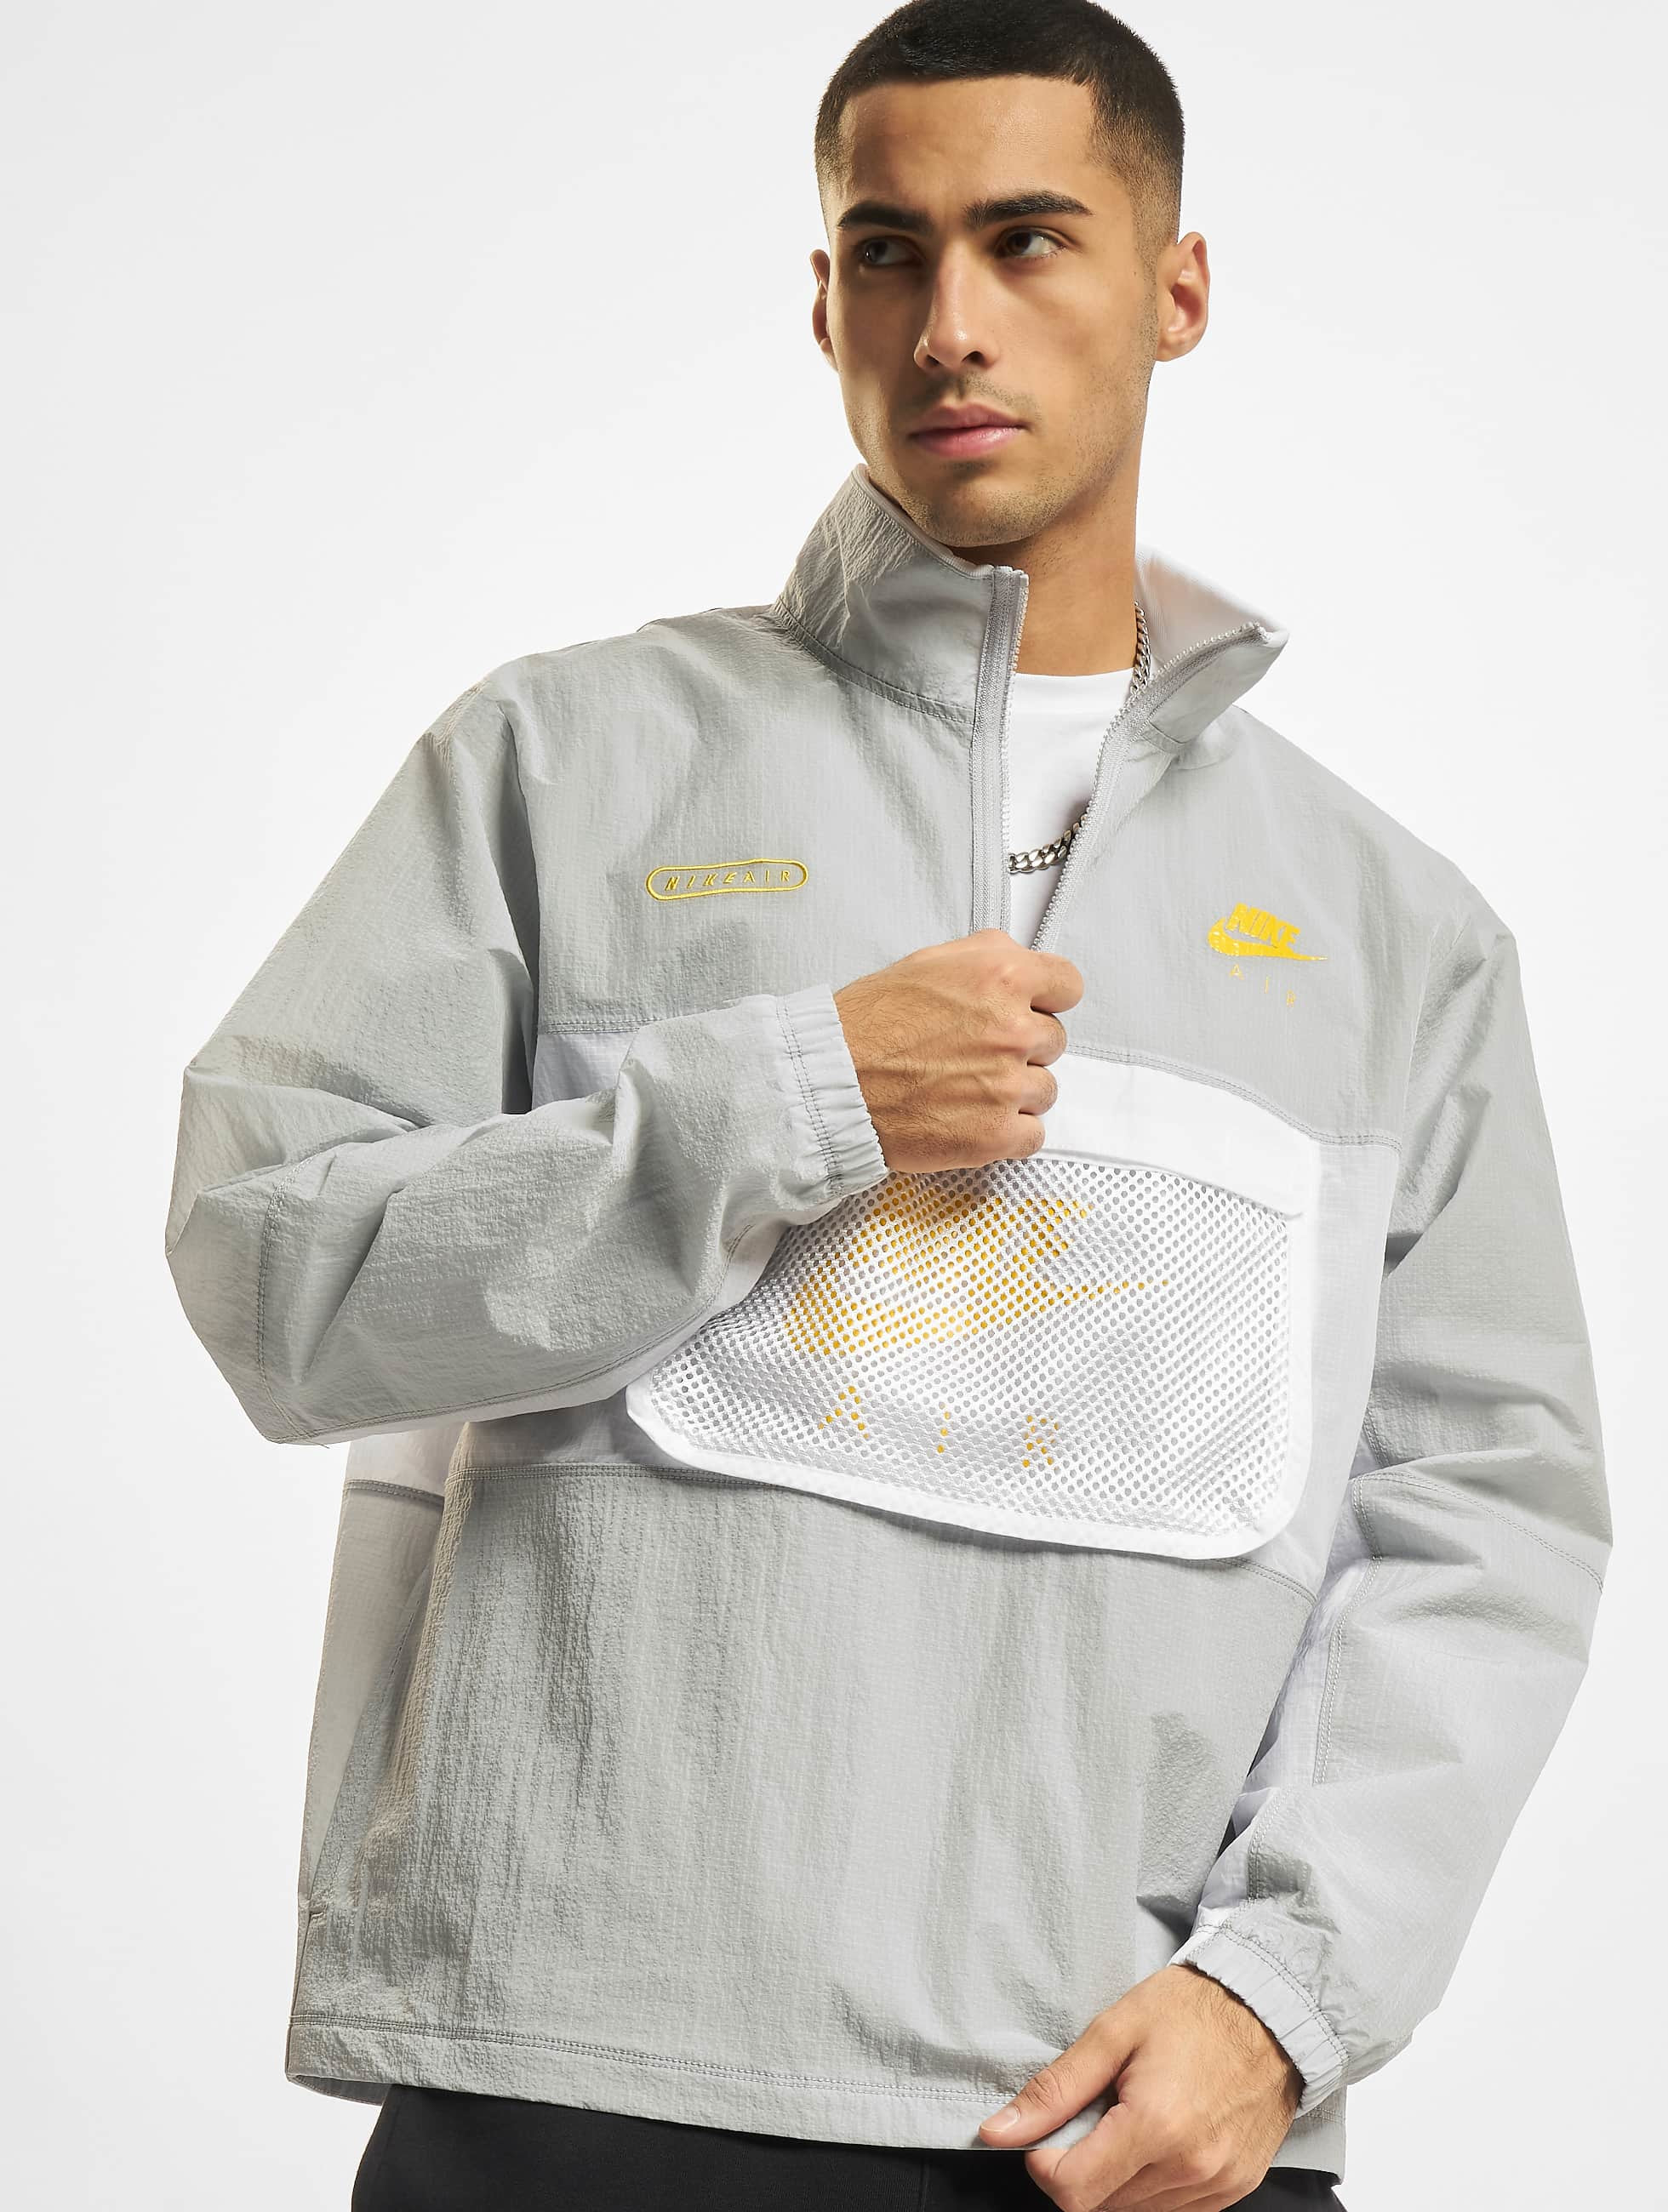 Matron moeilijk tevreden te krijgen Spotlijster Nike jas / Zomerjas Air Woven Lined in grijs 876189